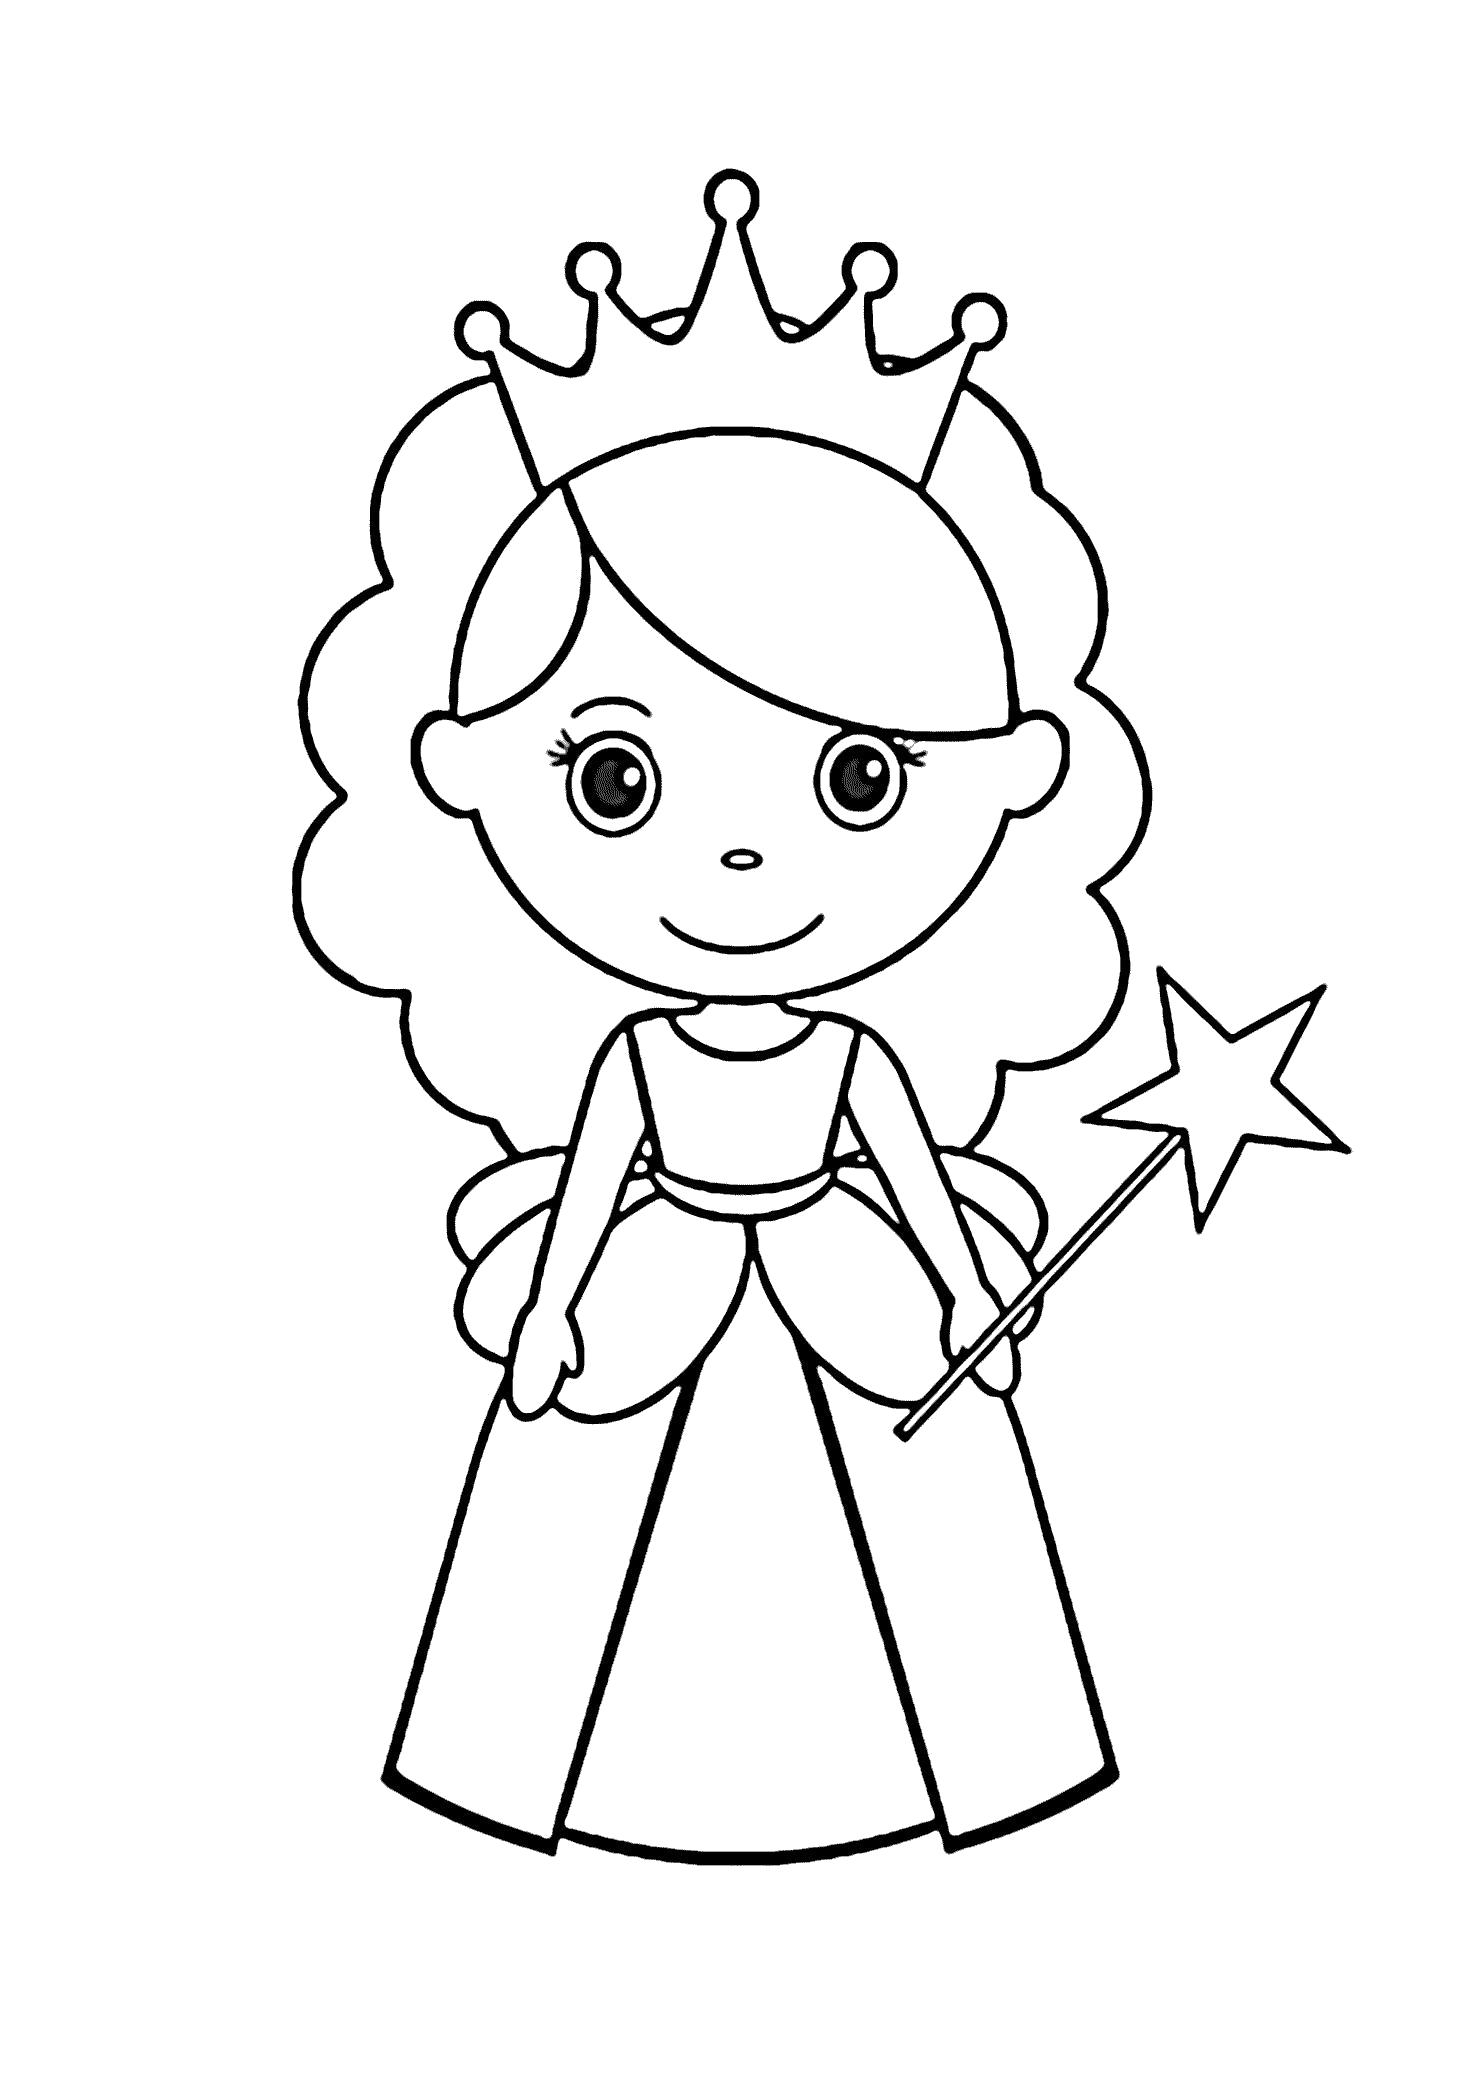 Название: Раскраска Принцесса Фея - раскраска для девочек (Распечатать/Скачать). Категория: мифические существа. Теги: фея.